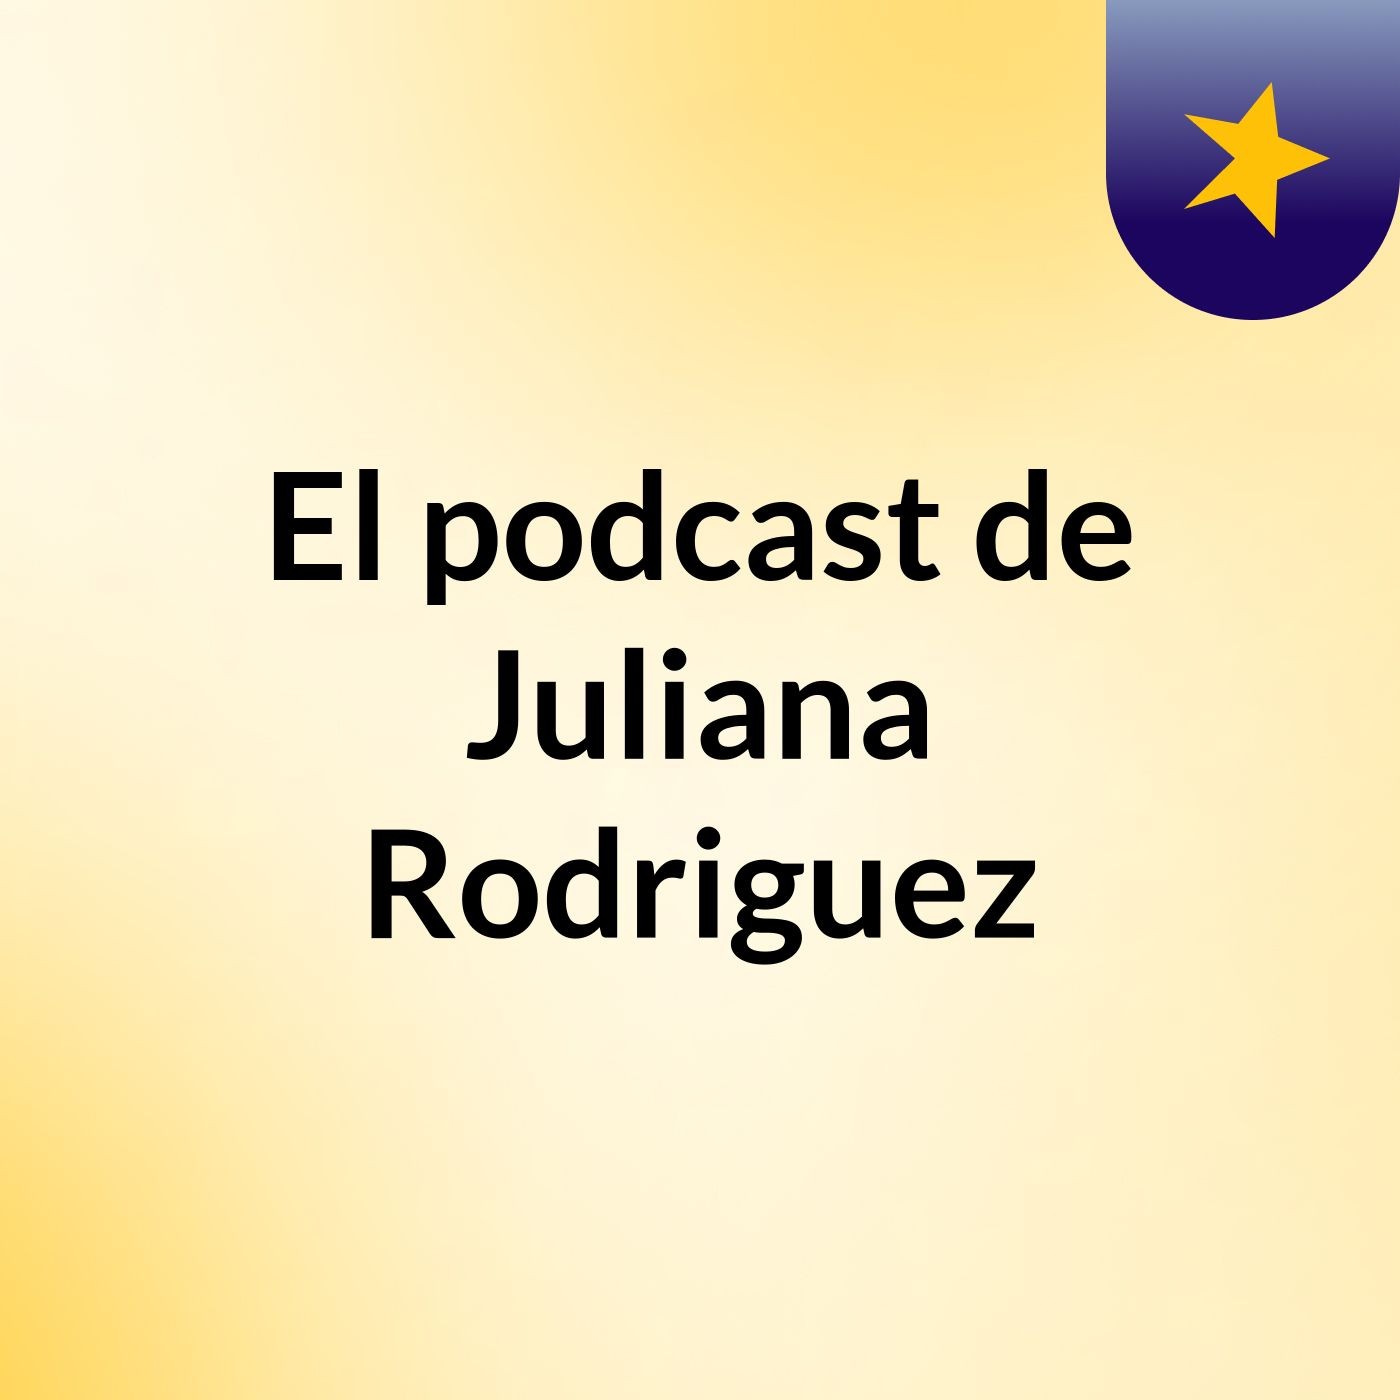 El podcast de Juliana Rodriguez